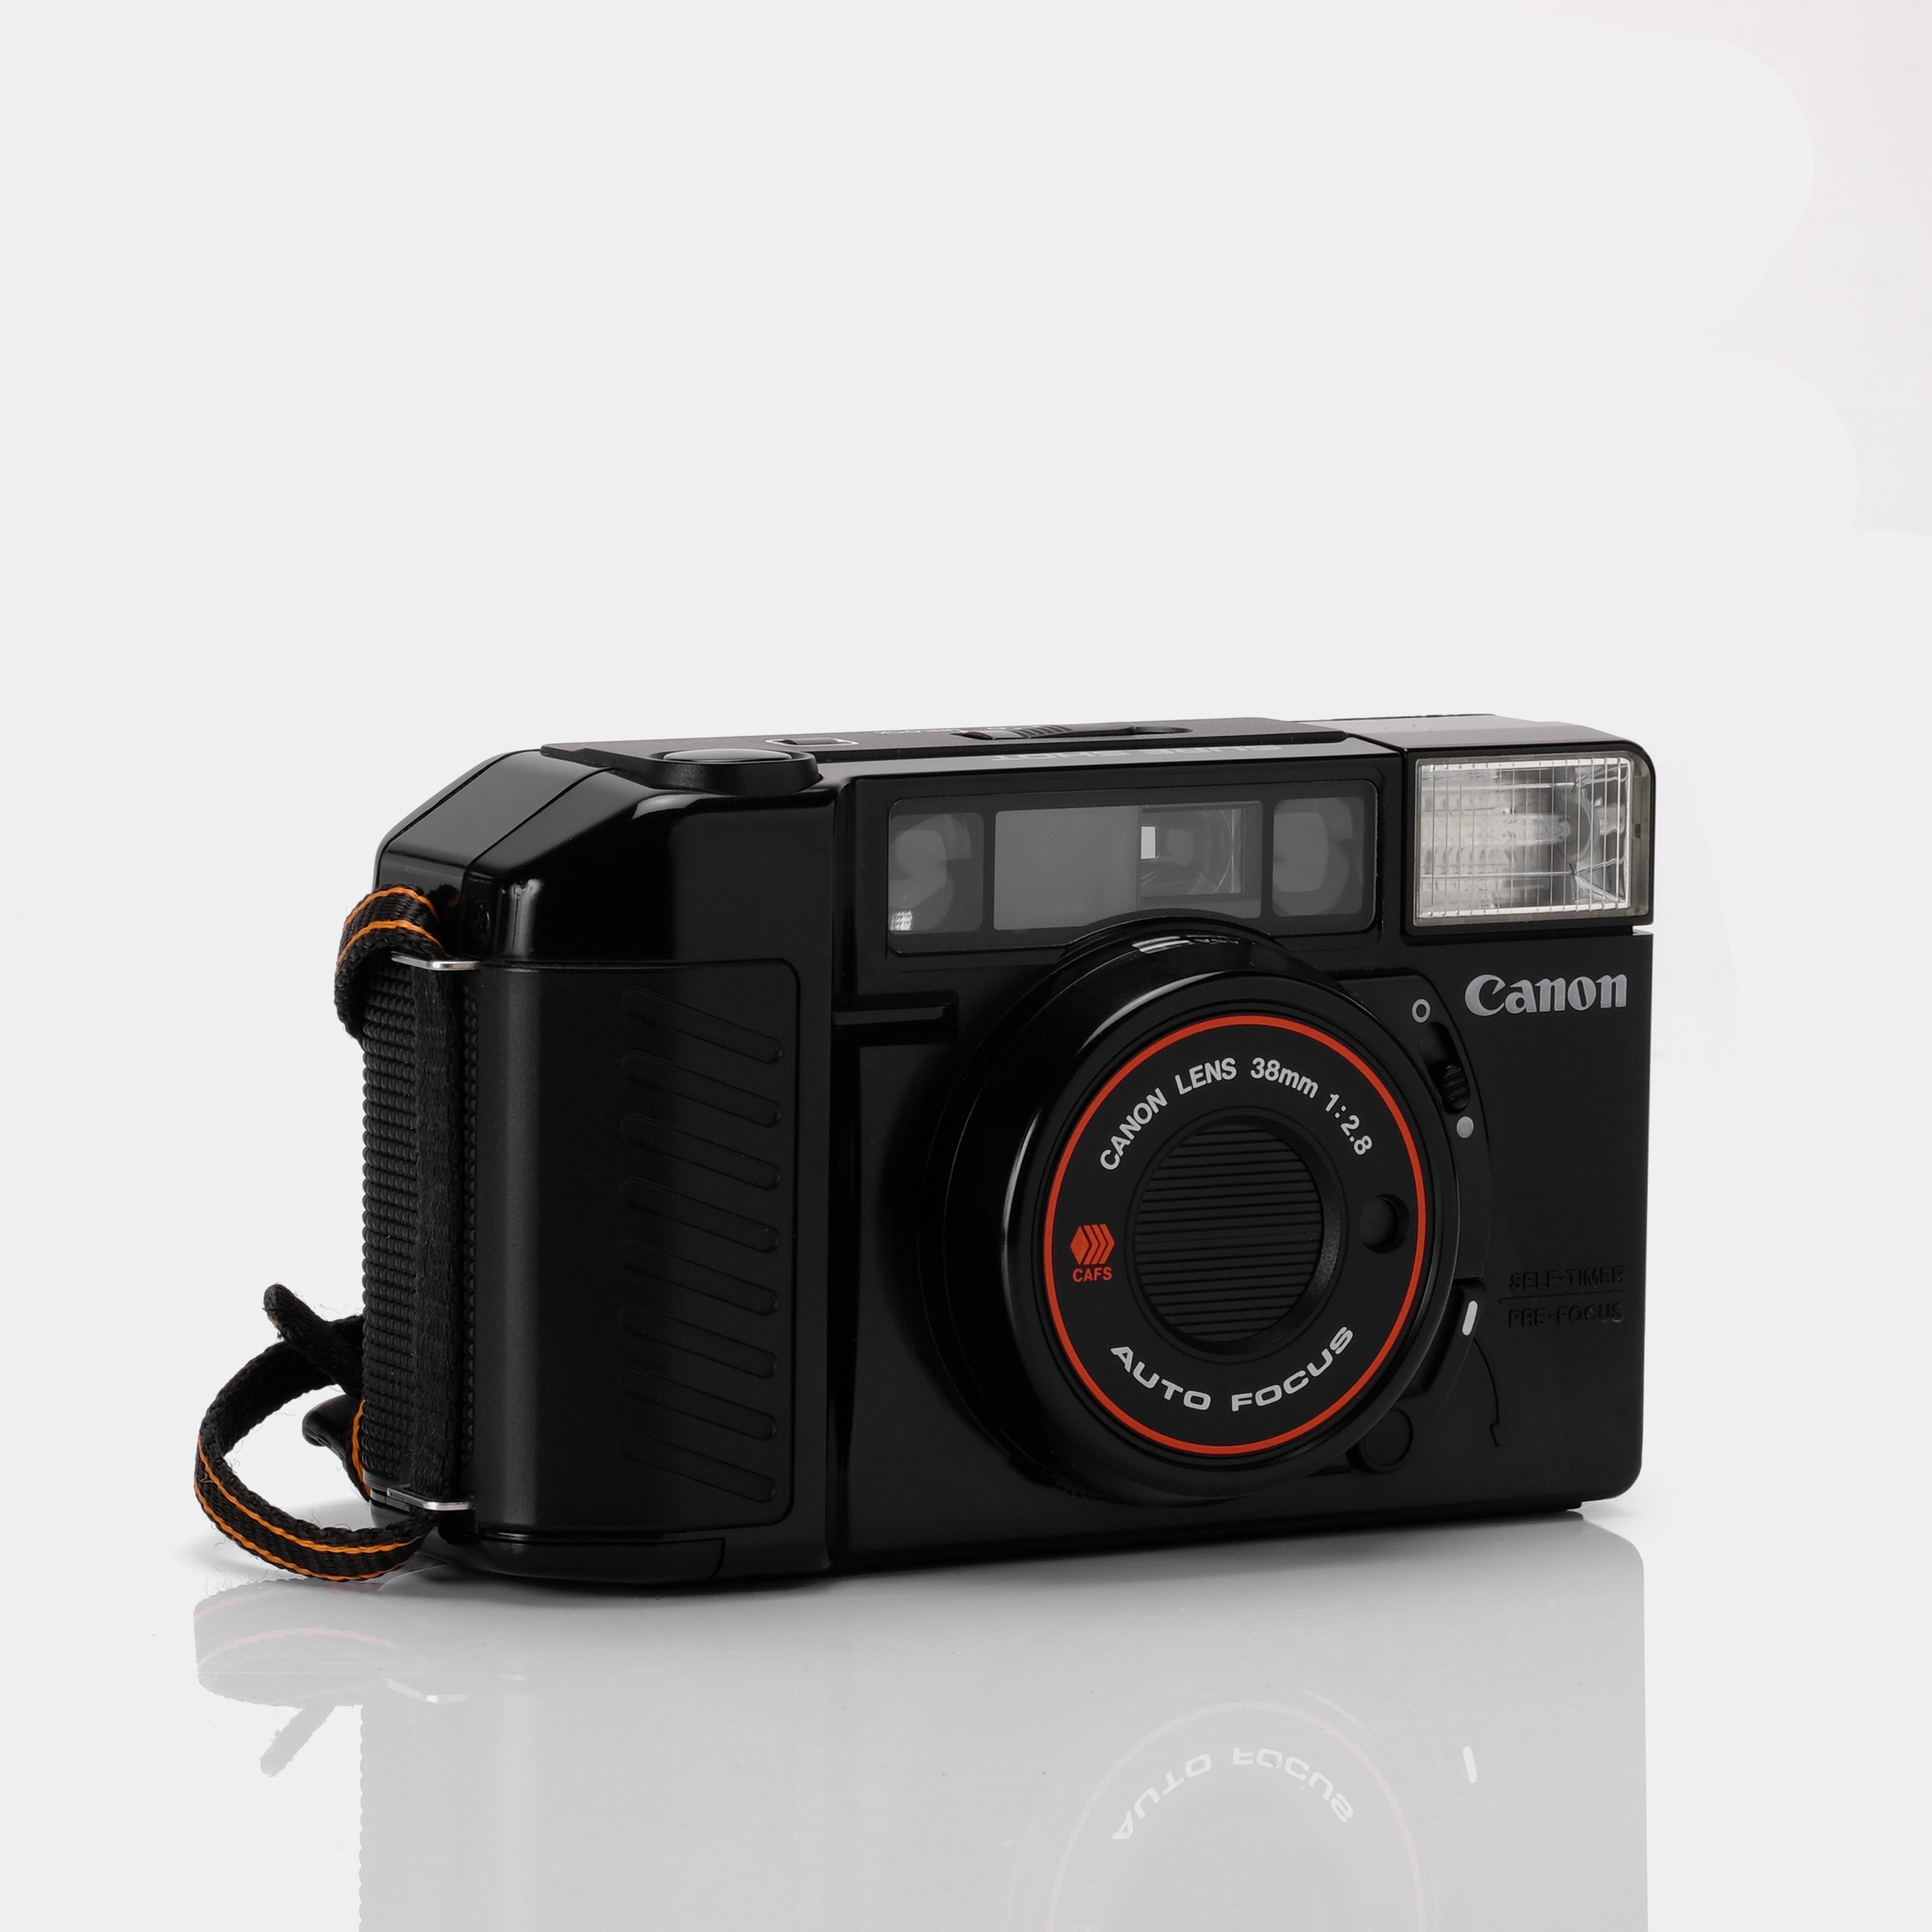 Canon Sure Shot 35mm Scale Focus Film Camera